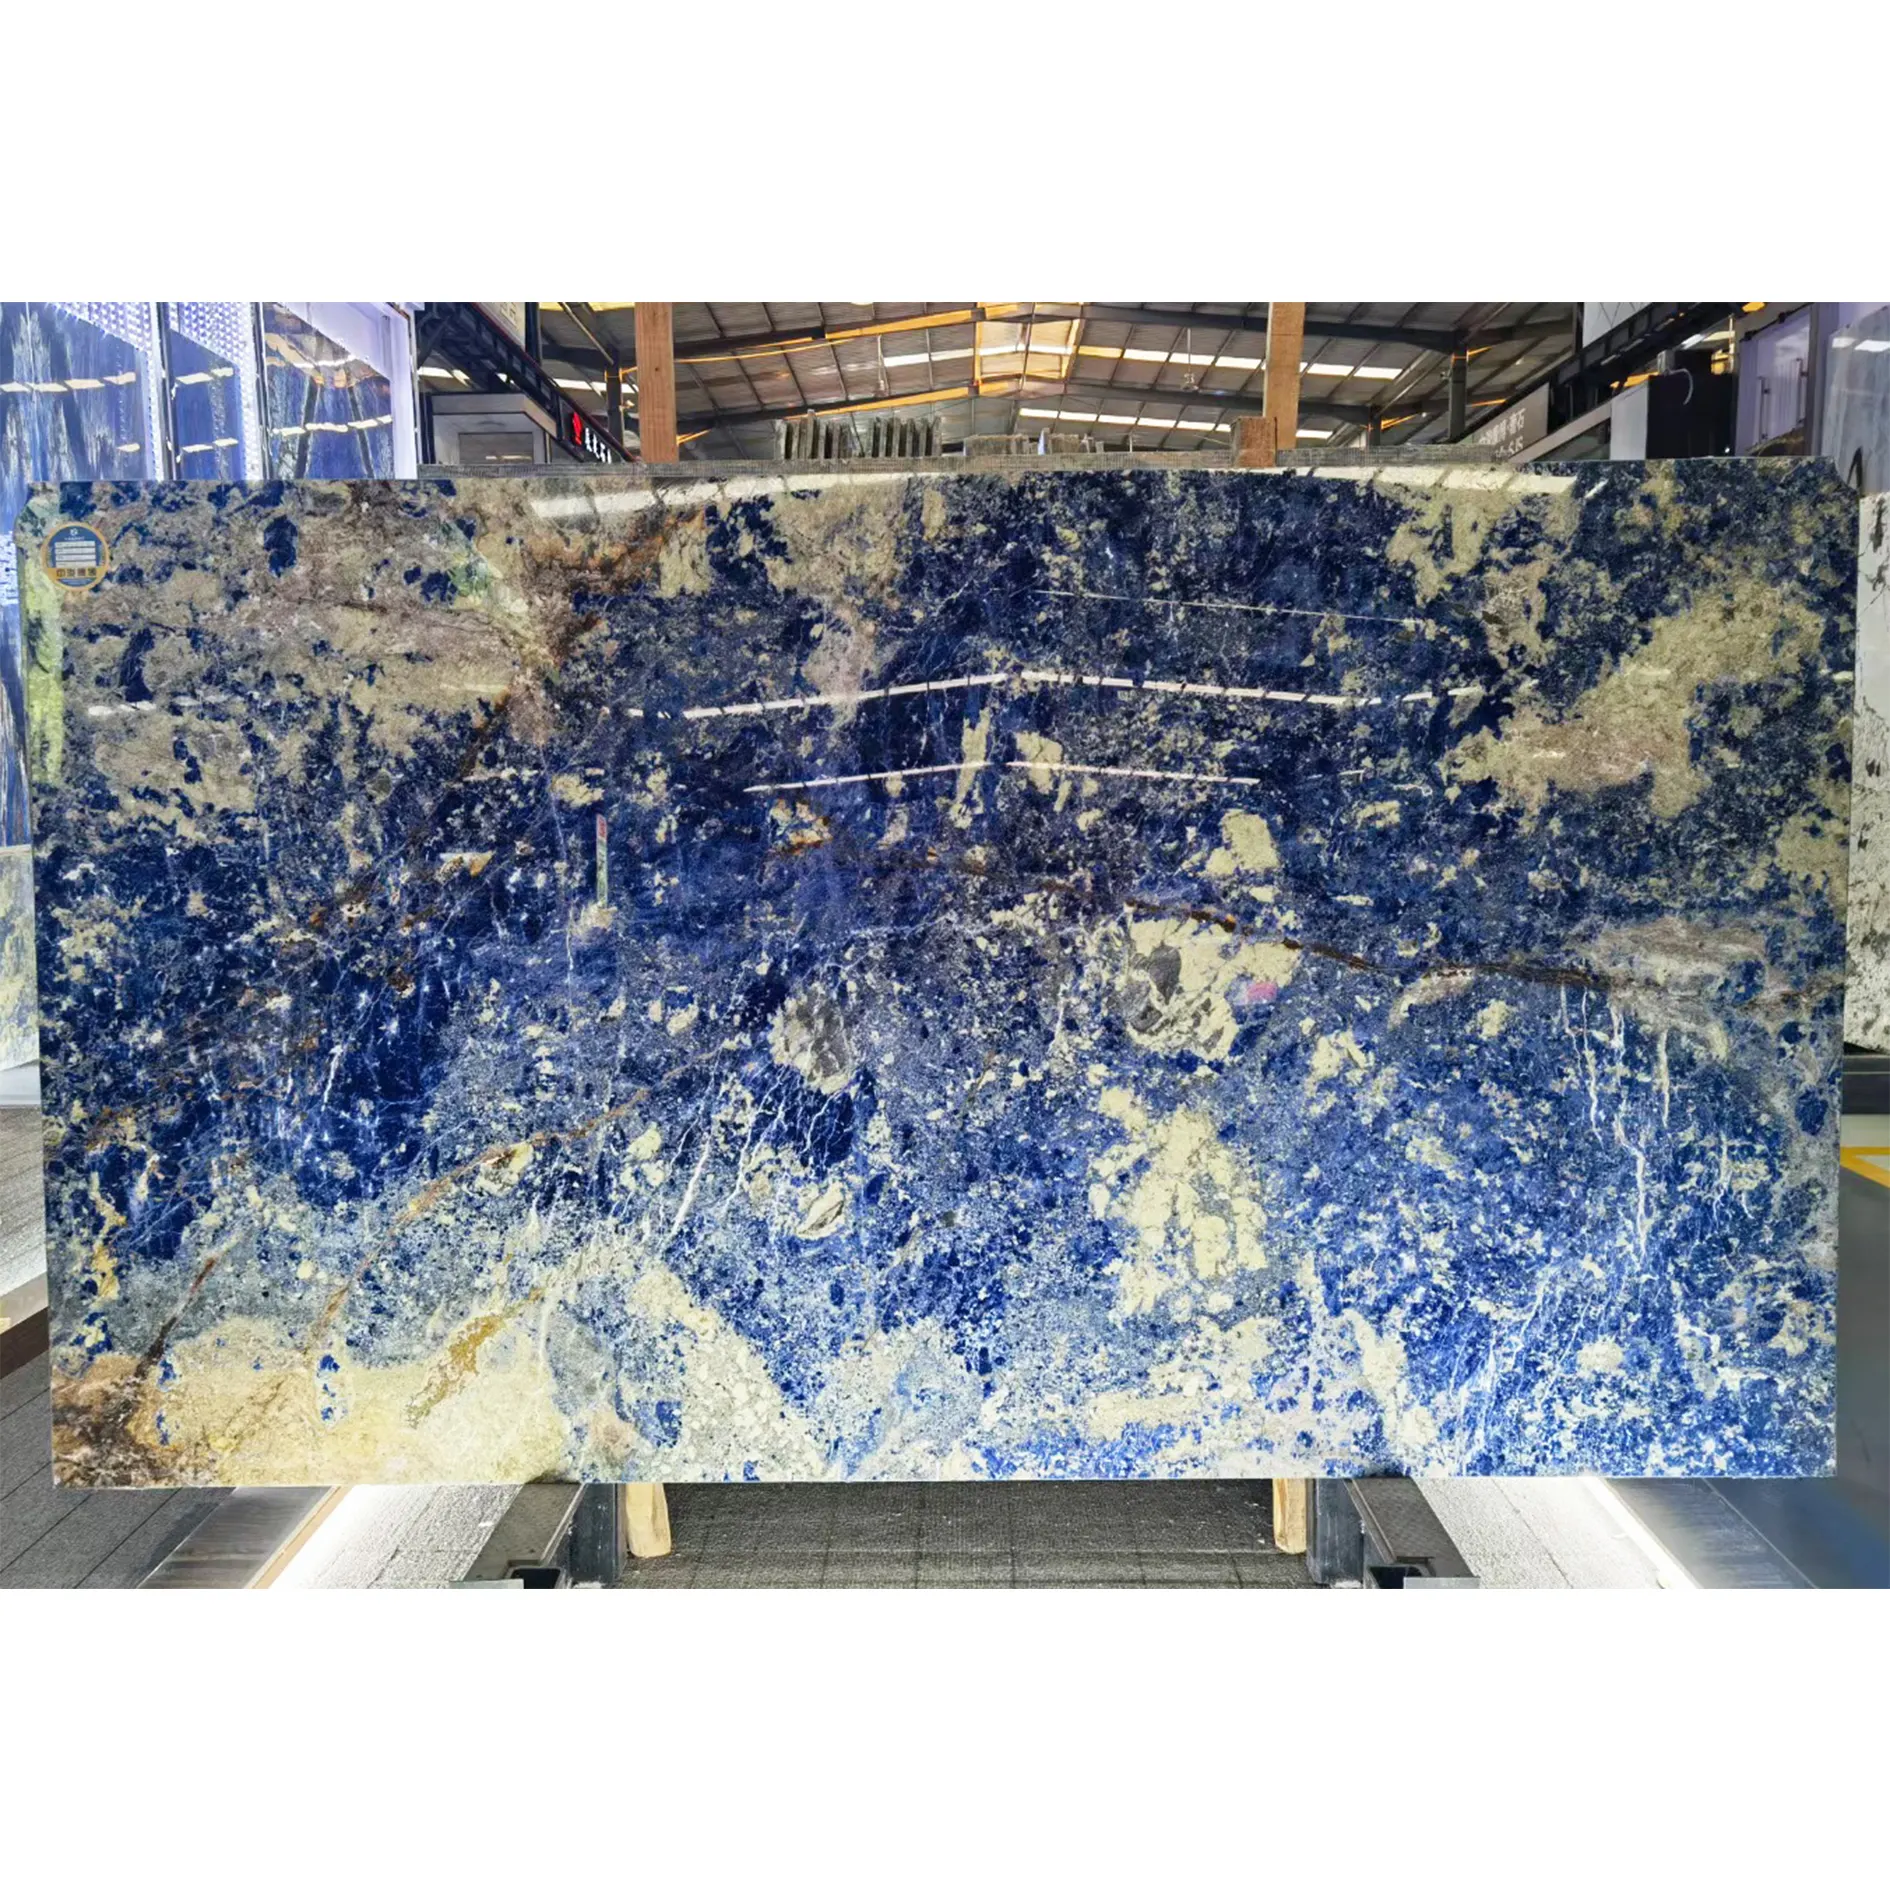 Содалитовый синий гранит натуральный мраморный камень Боливия синяя настенная плитка роскошный декоративный фон плиты высокого класса мебель Топ